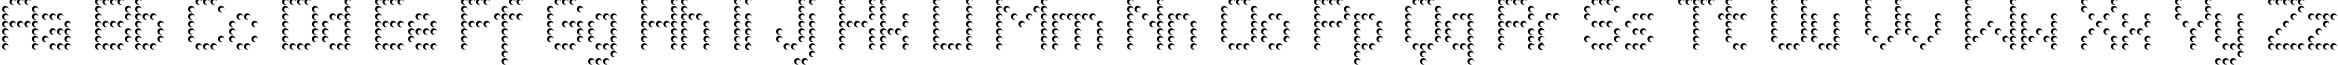 Пример написания английского алфавита шрифтом PerfoCone